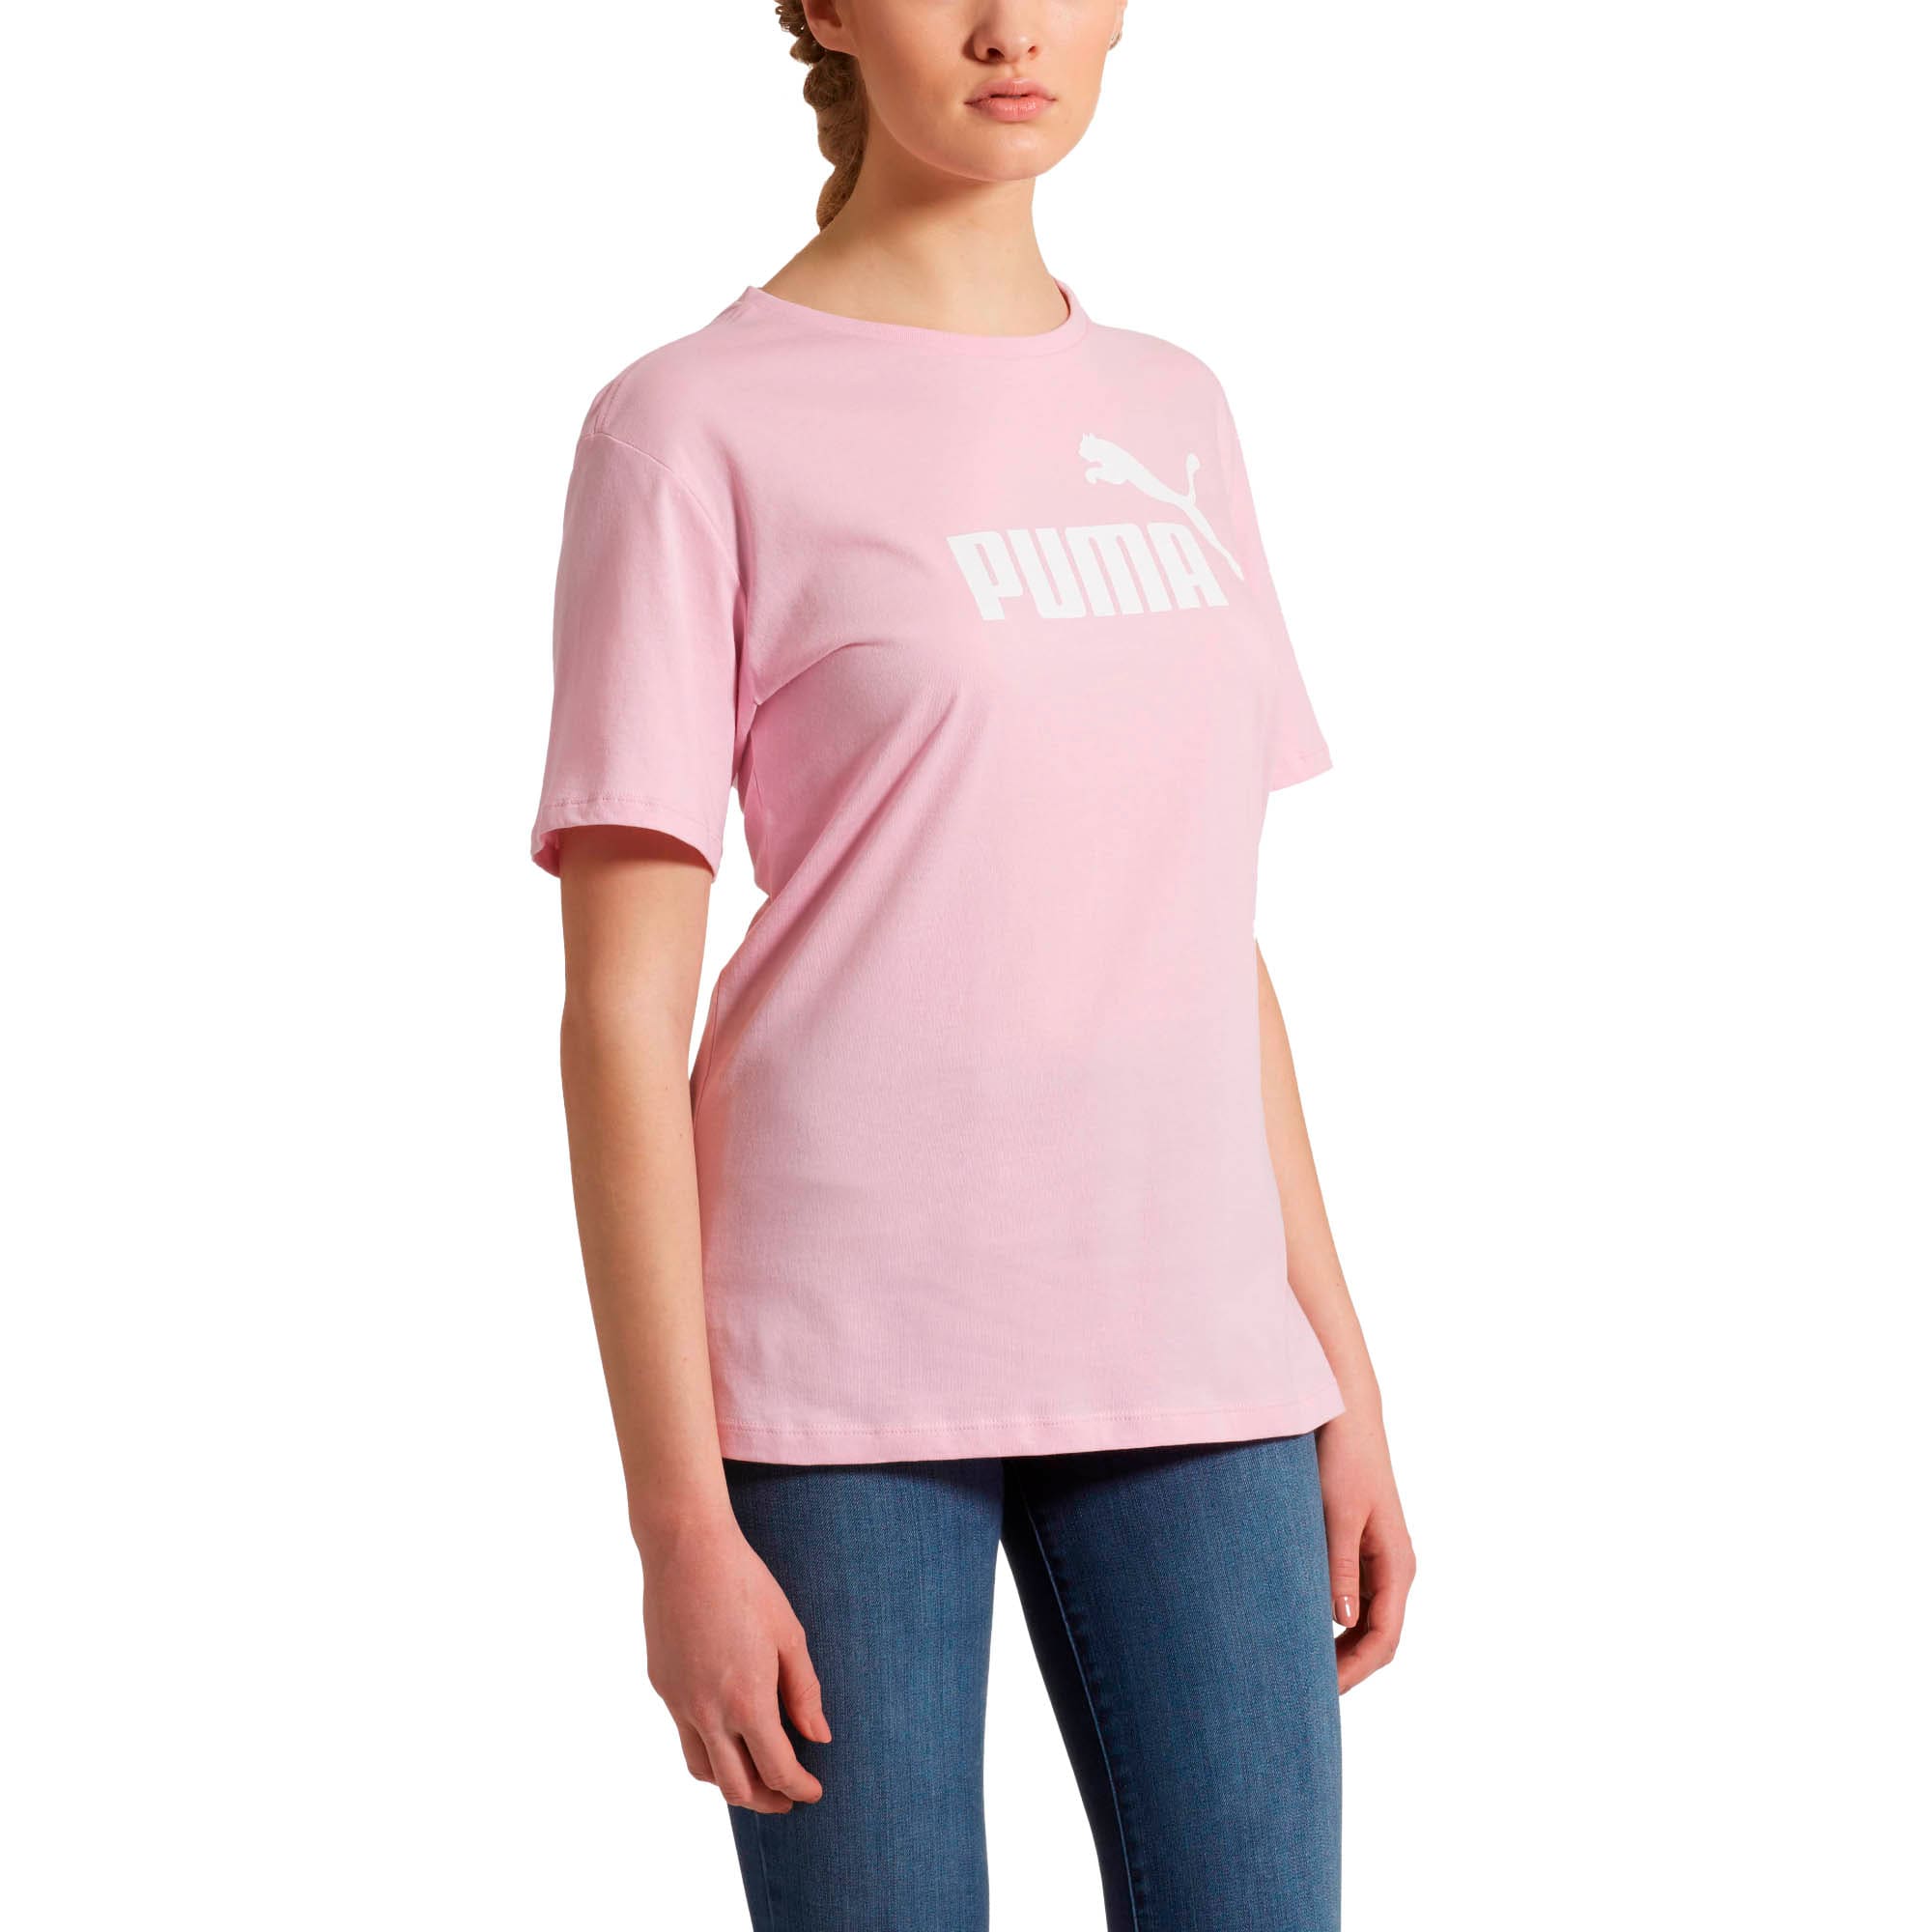 Women's Boyfriend Logo T-Shirt, Pale Pink, large-SEA